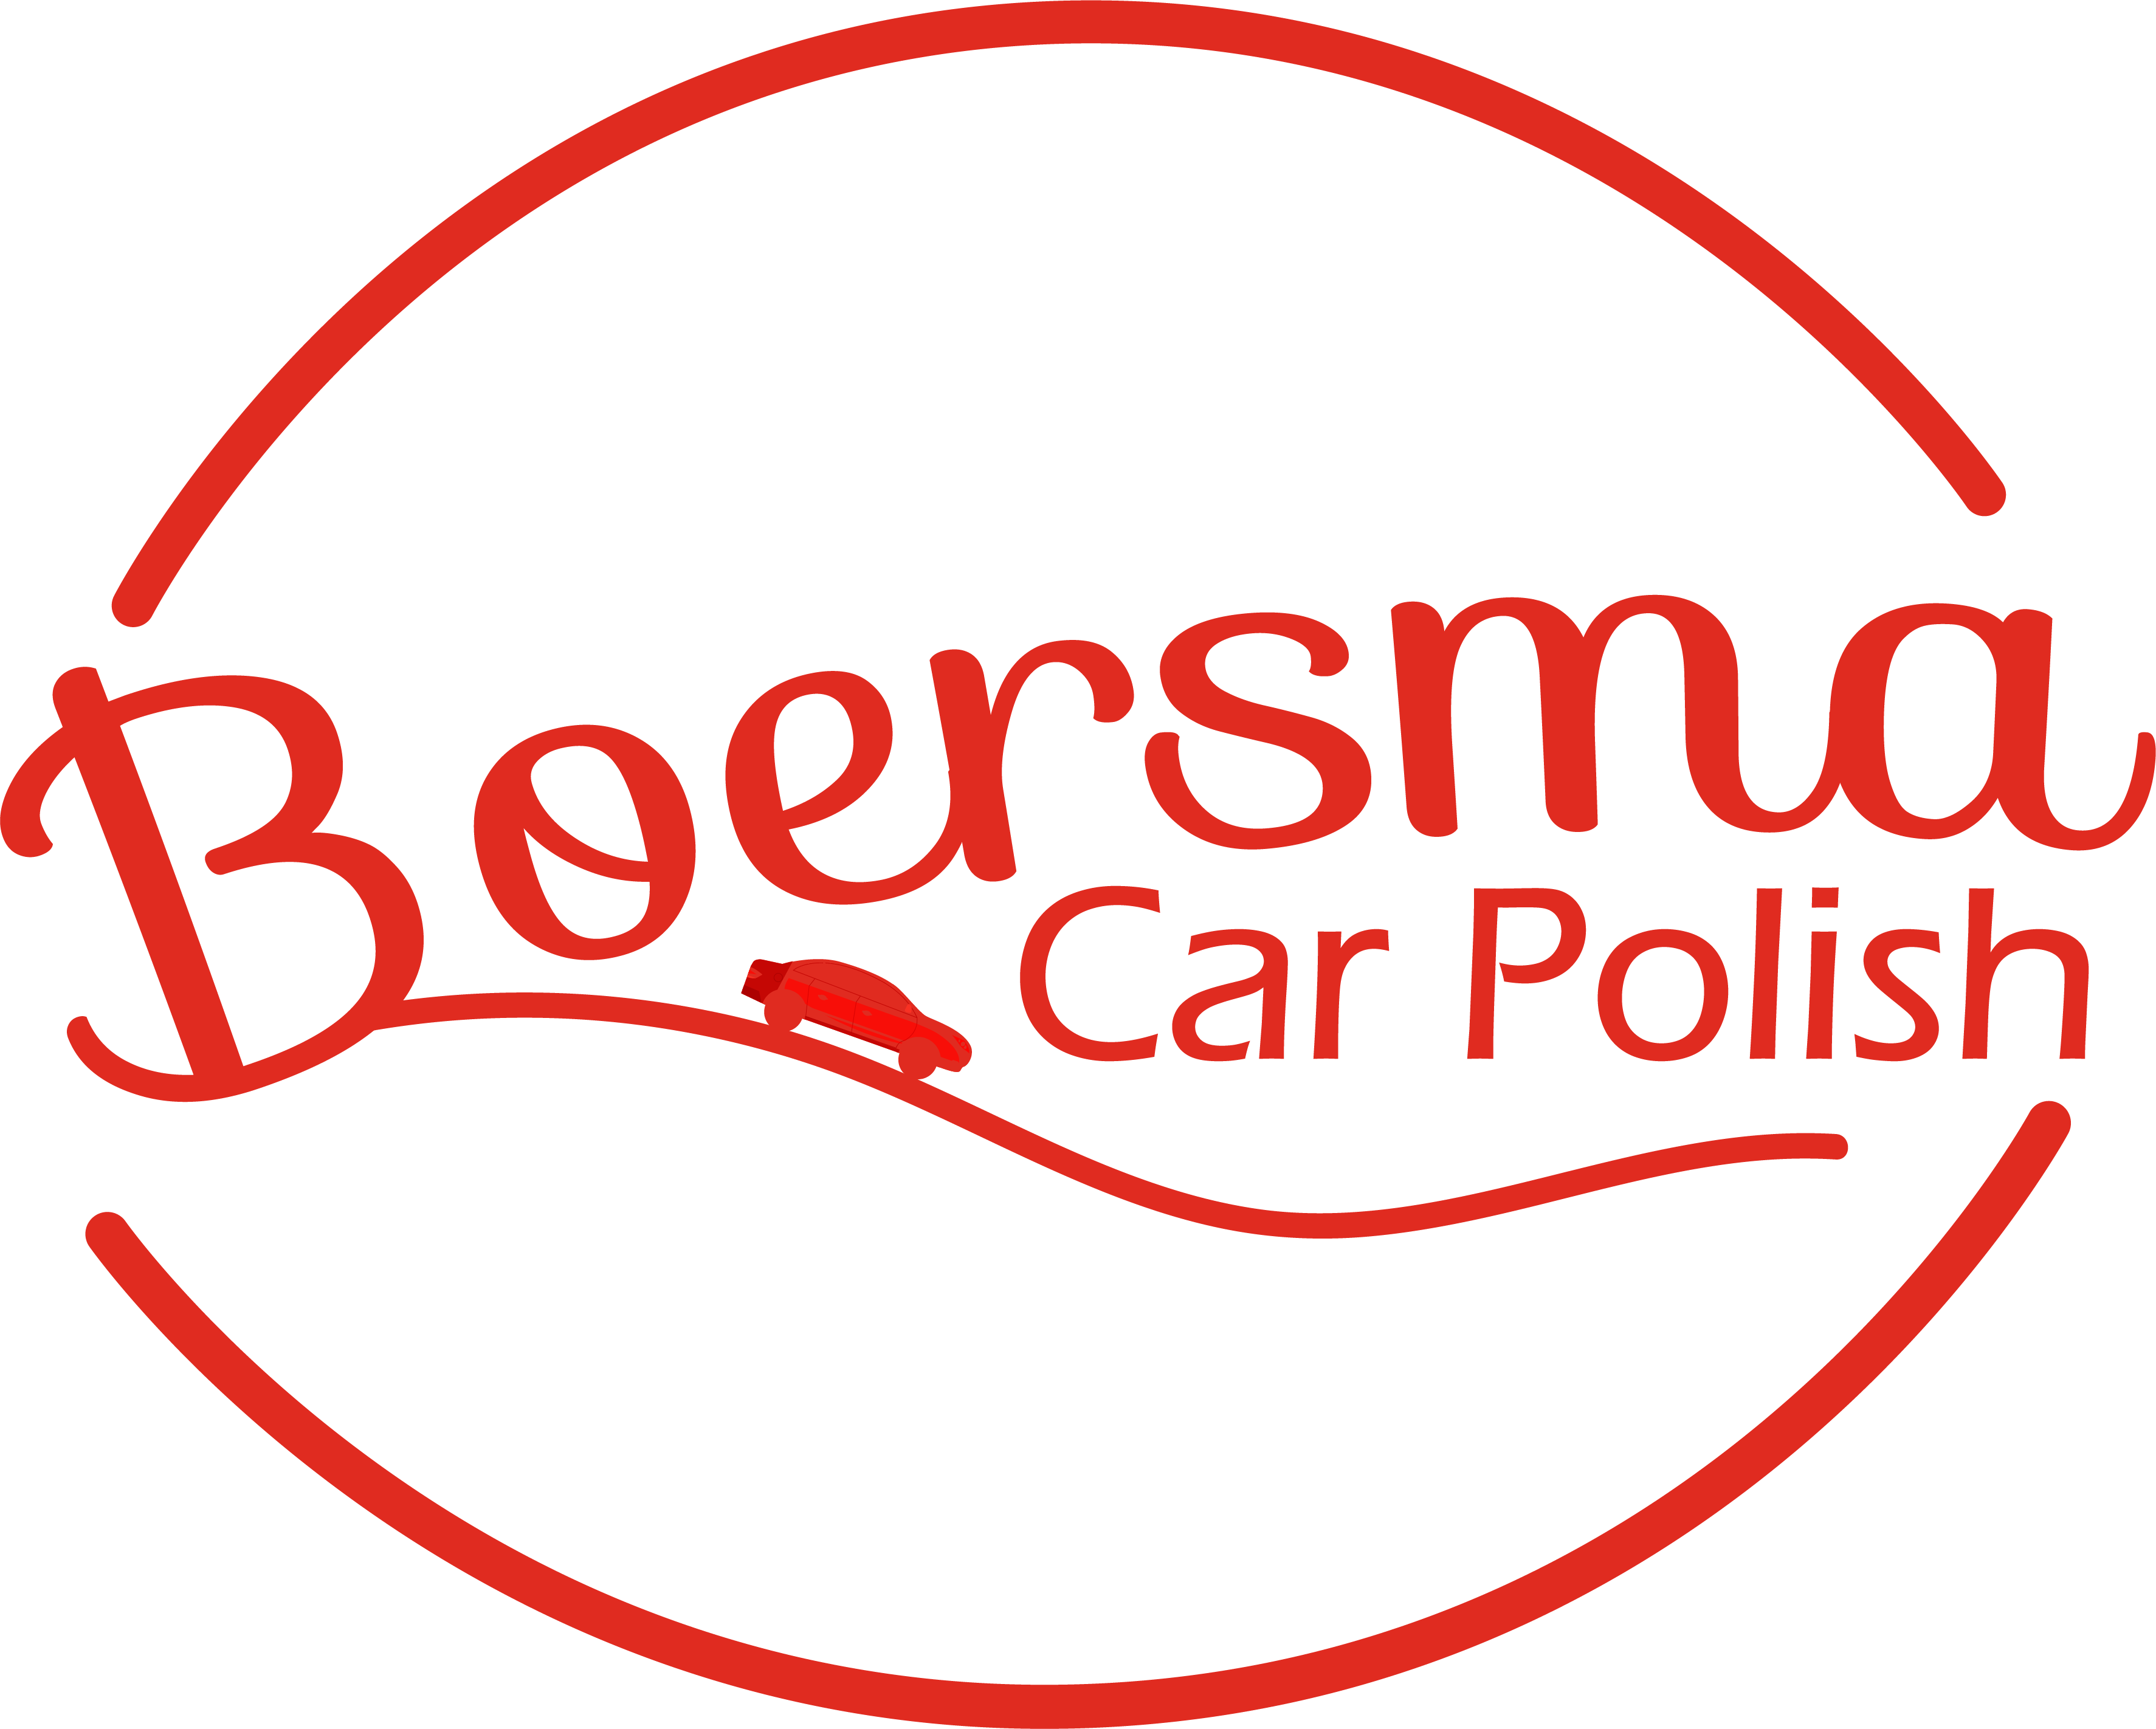 Boersma Car Polish